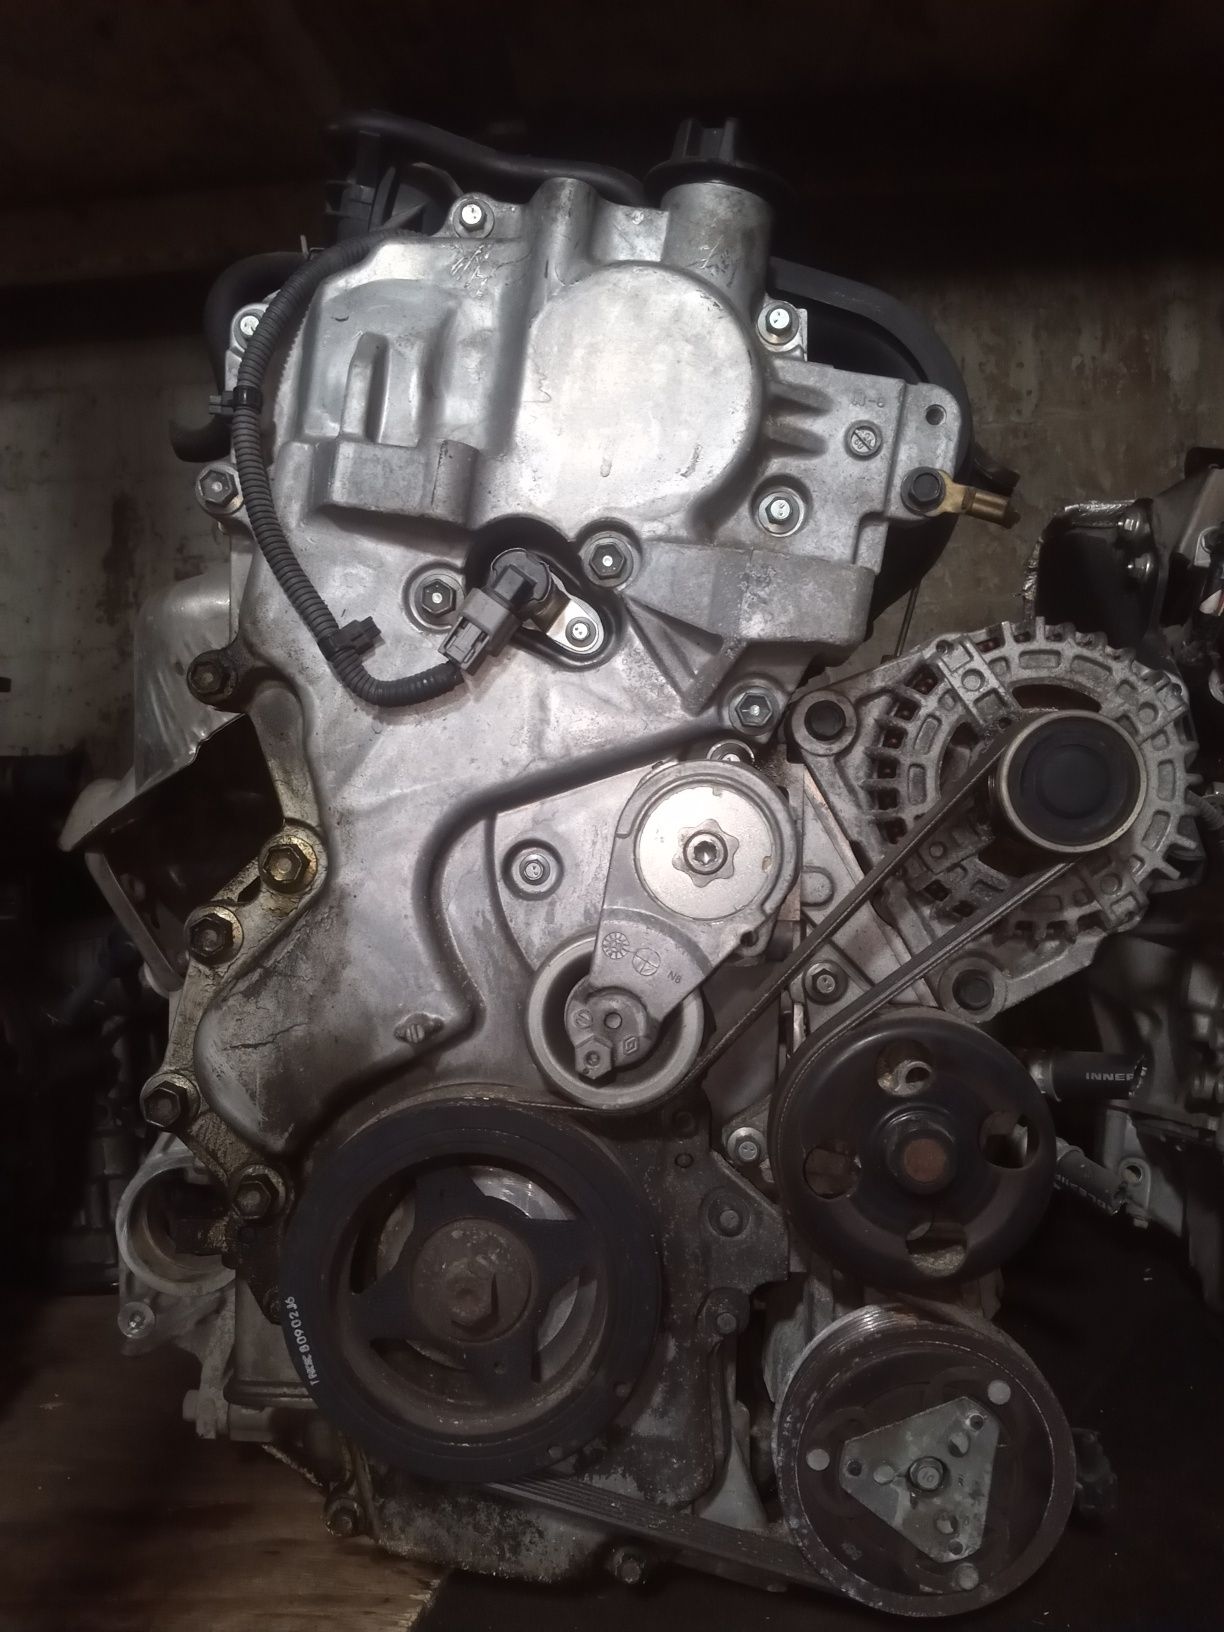 Nissan Tiida I c пробегом: моторы с ресурсом “за 350” и неприятный сюрприз от ручной коробки